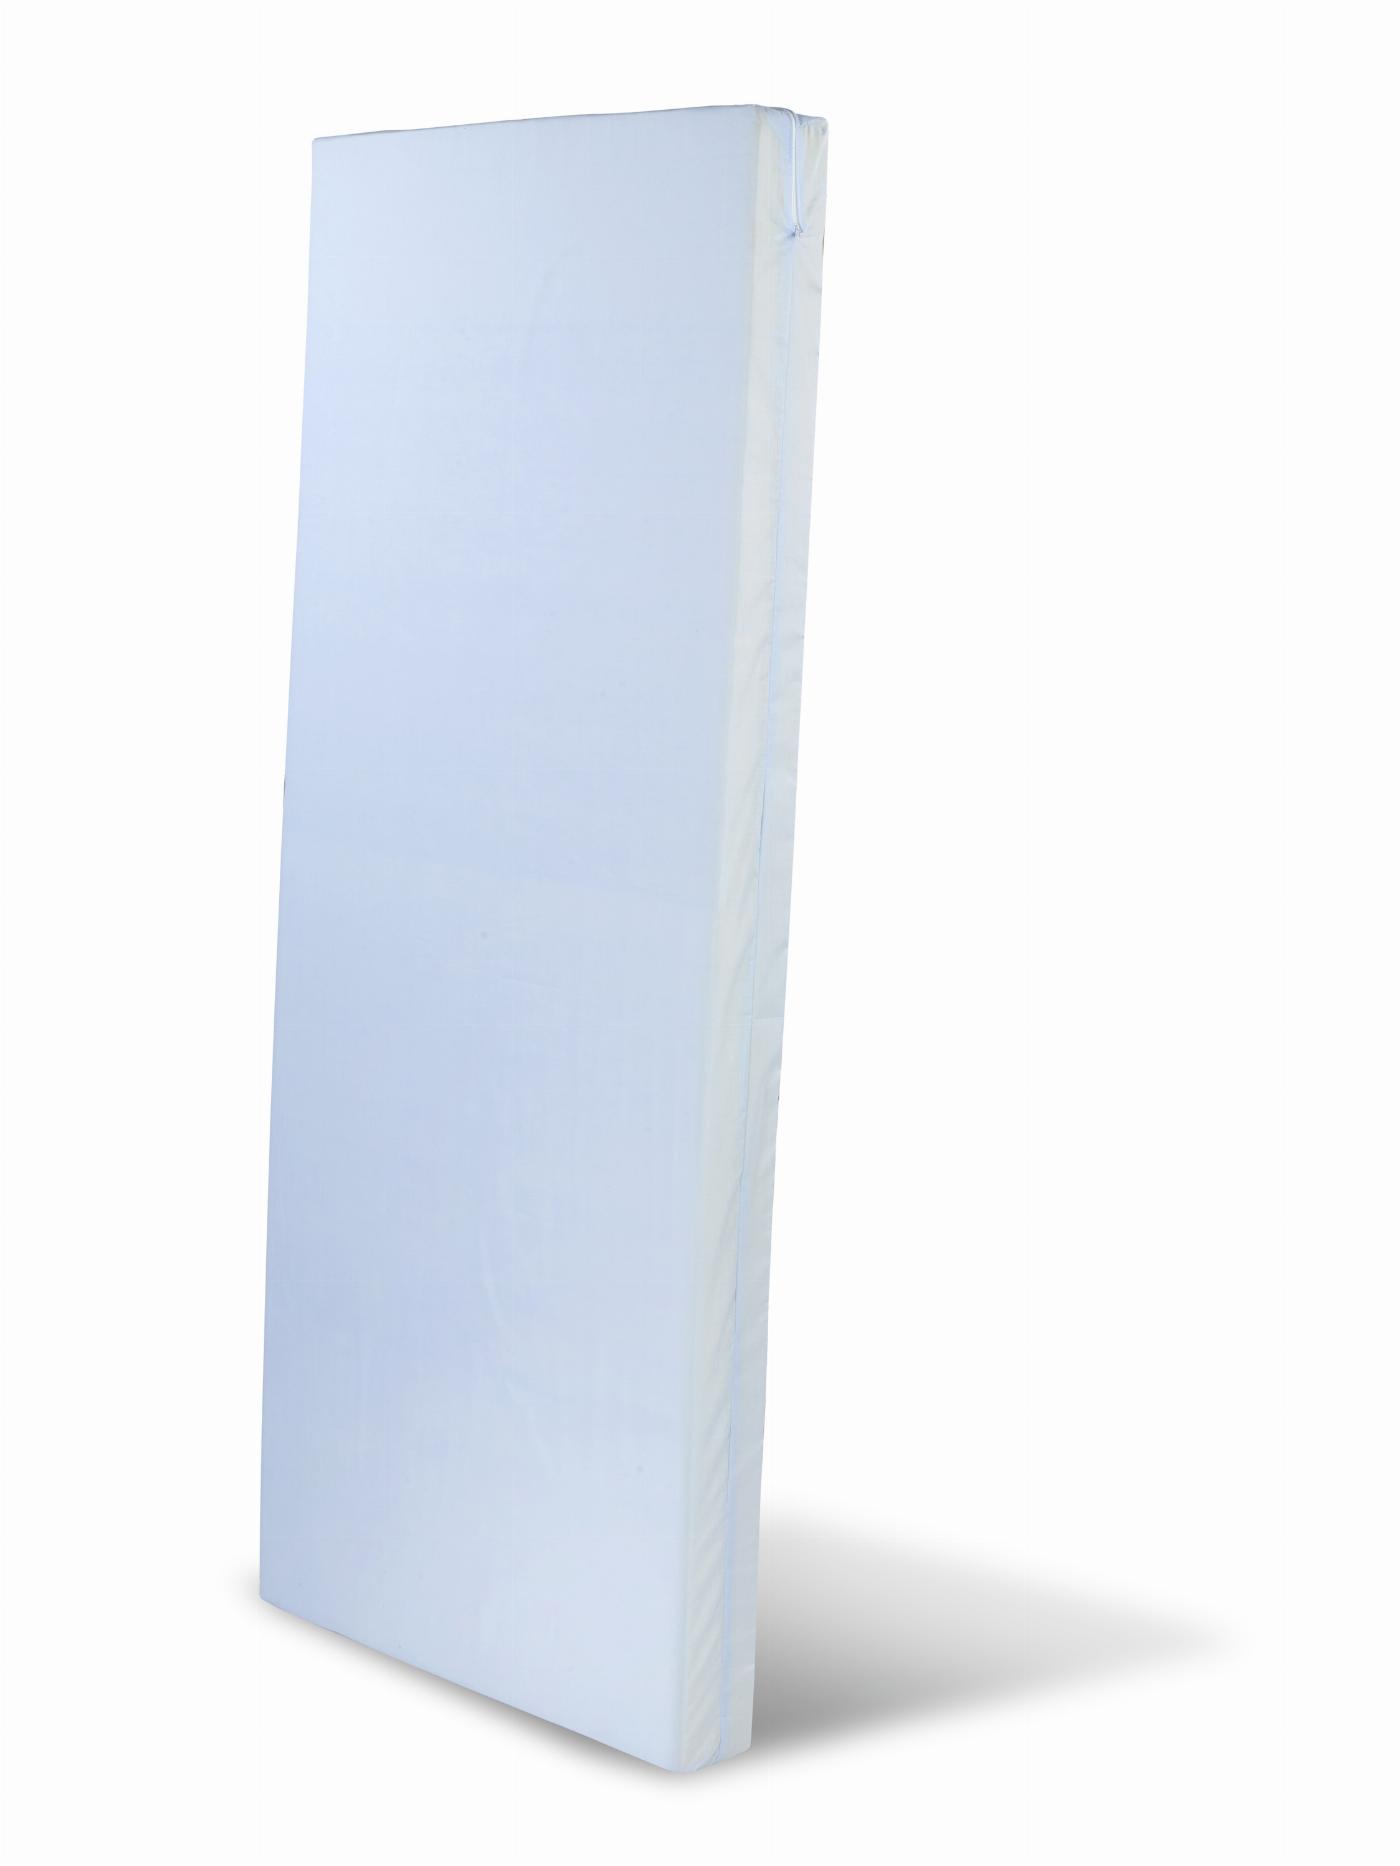 NEAPOL materac 200x90x12 cm - kolor niebieski